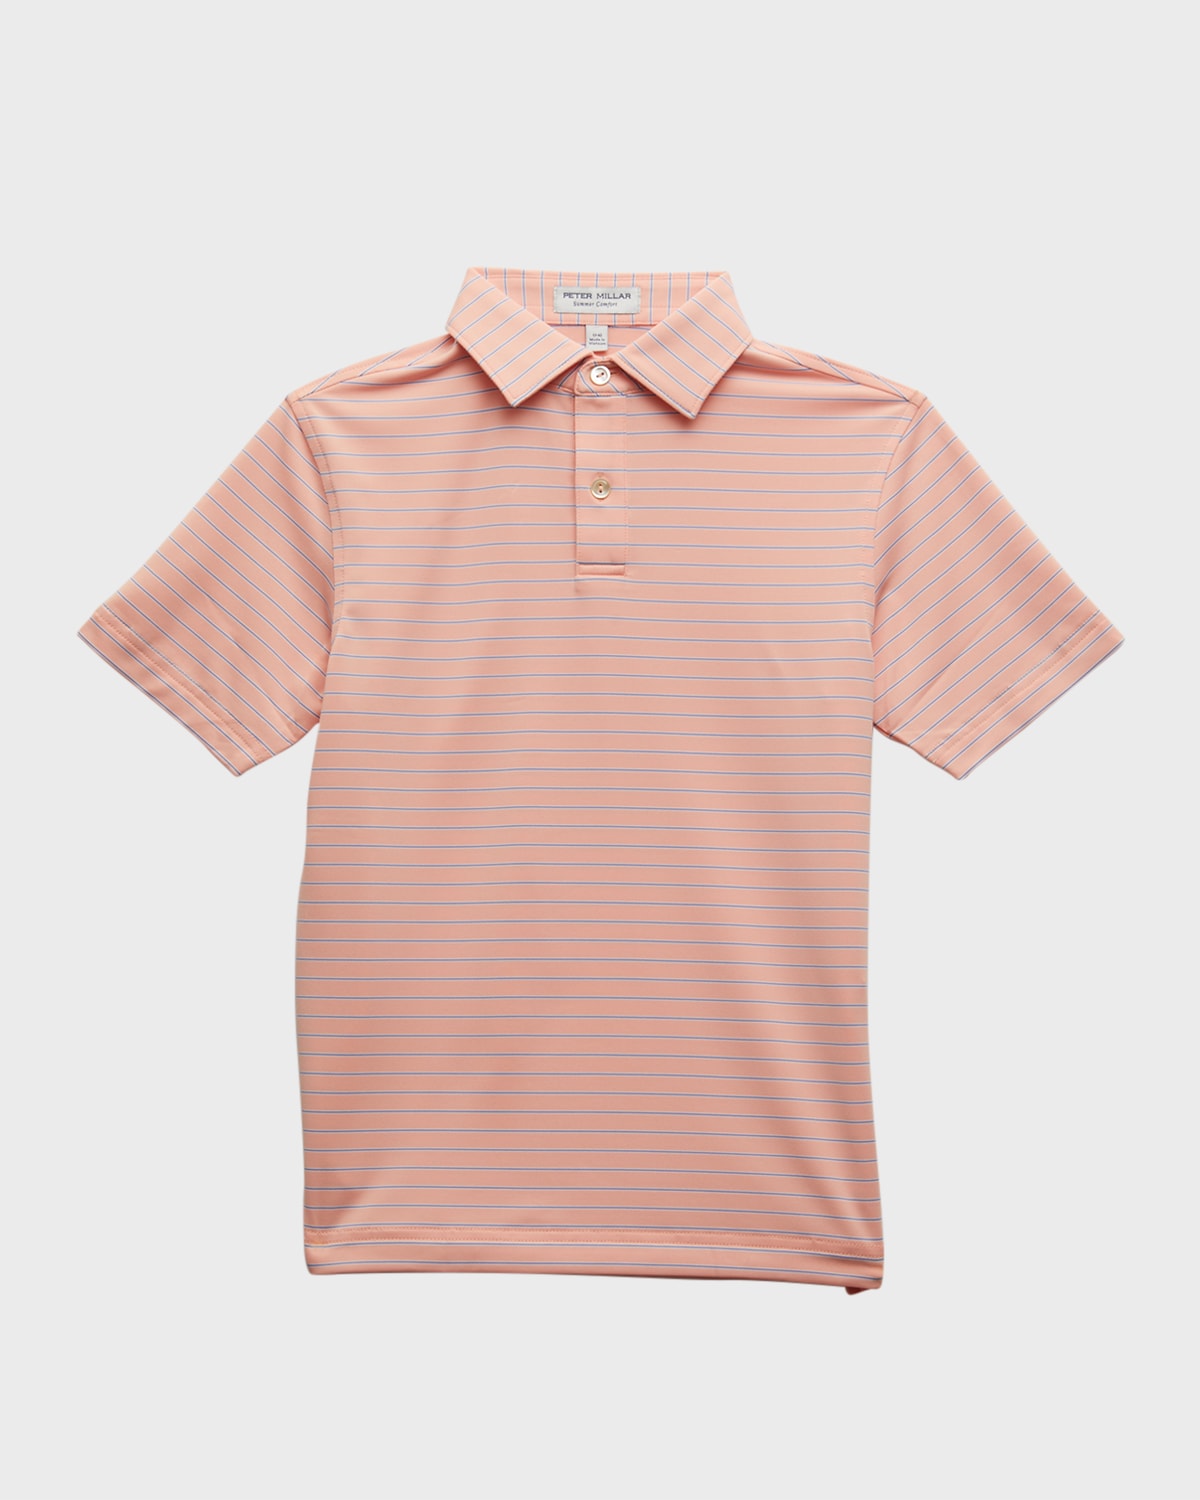 Boy's Drum Striped-Print Performance Jersey Polo Shirt, Size XS-XL